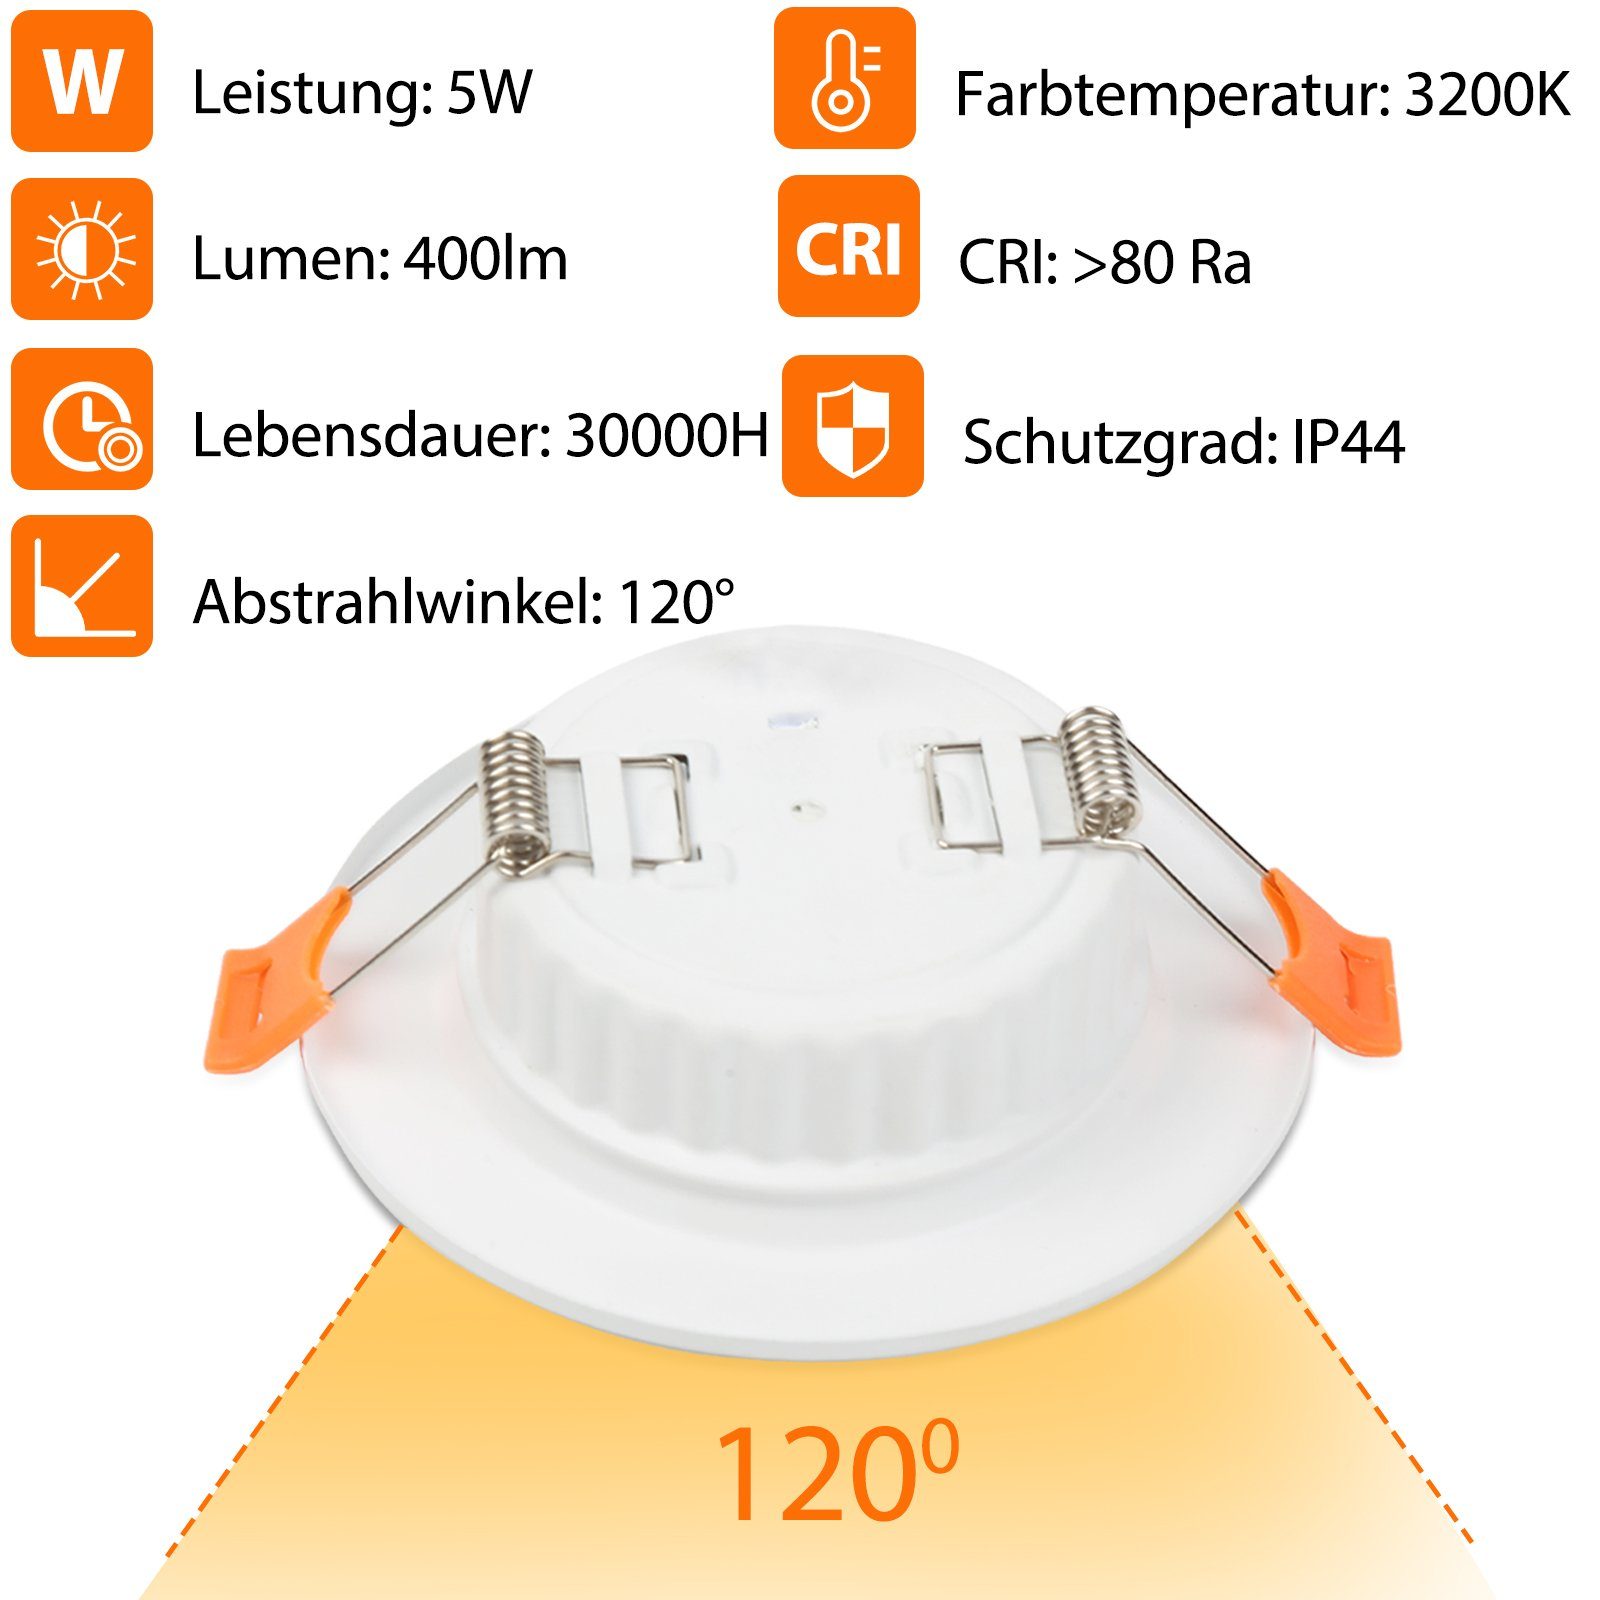 WarmWeiß 20St. 5W 400LM Decken-Spots Einbauleuchte LED Einbaustrahler Gimisgu LED Einbaustrahler